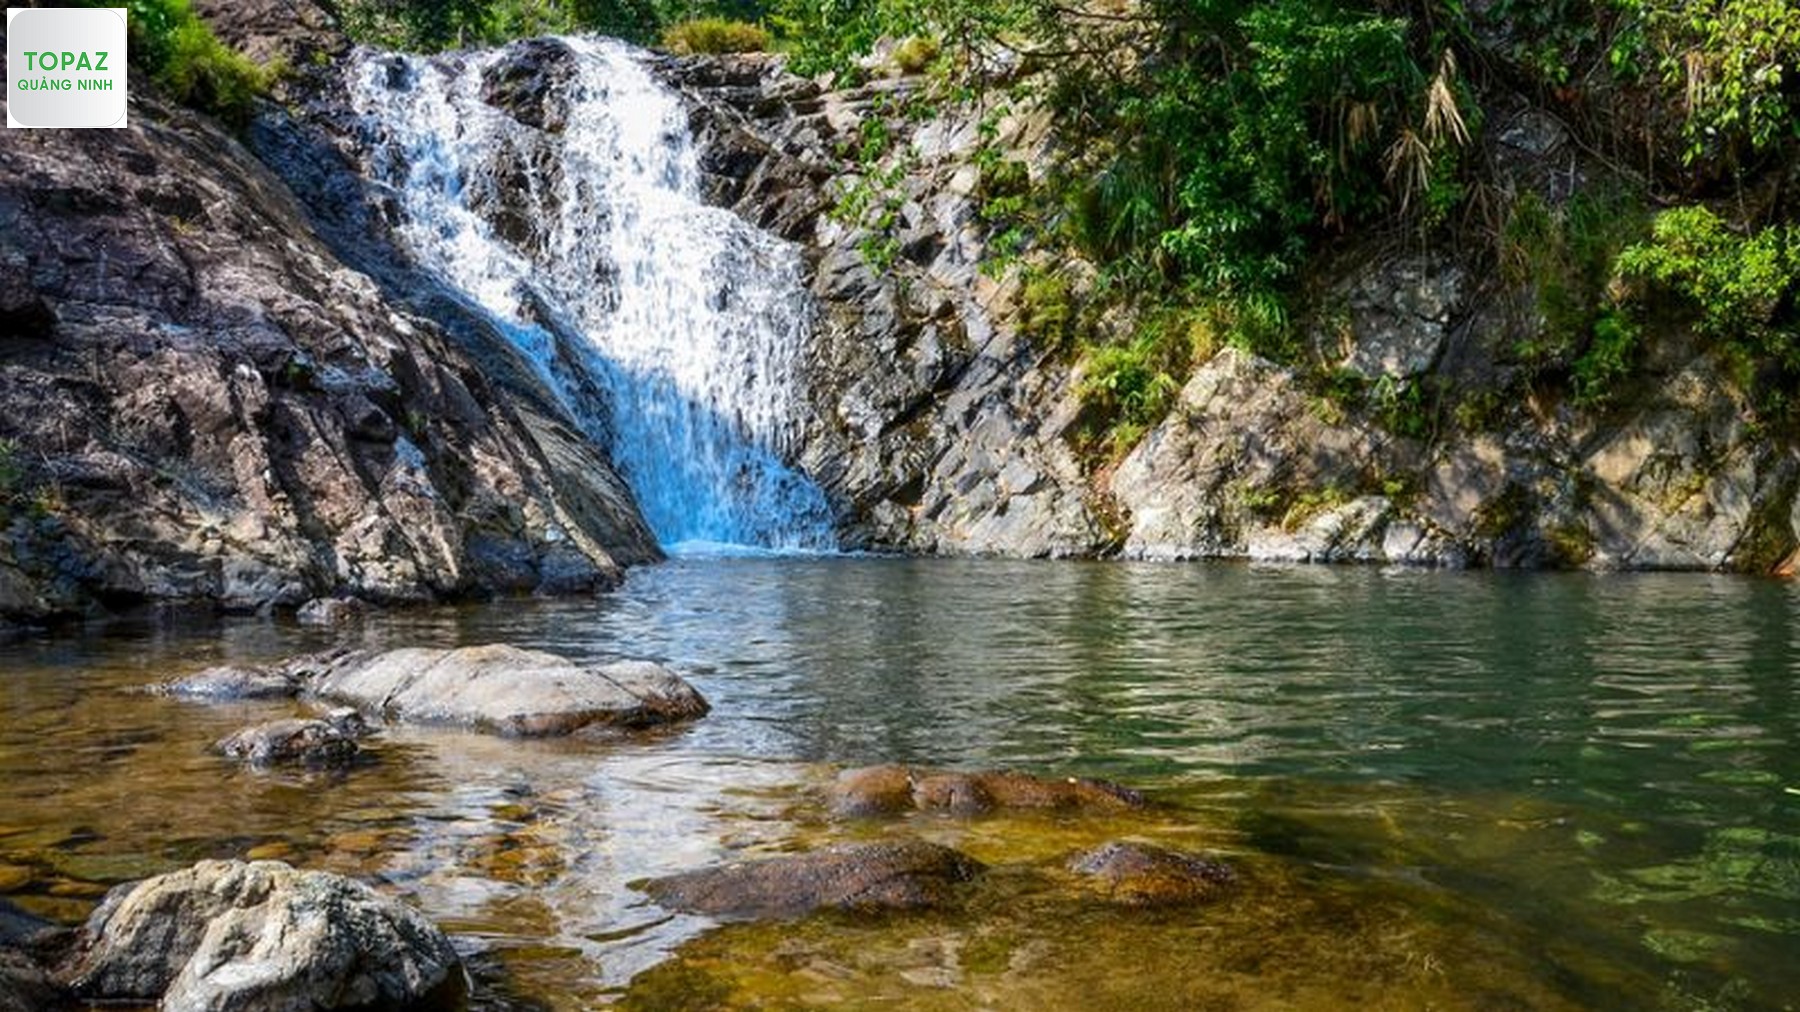 Chinh phục Thác Pạc Sủi – 16 tầng thác nước ẩn chứa vẻ đẹp hoang sơ